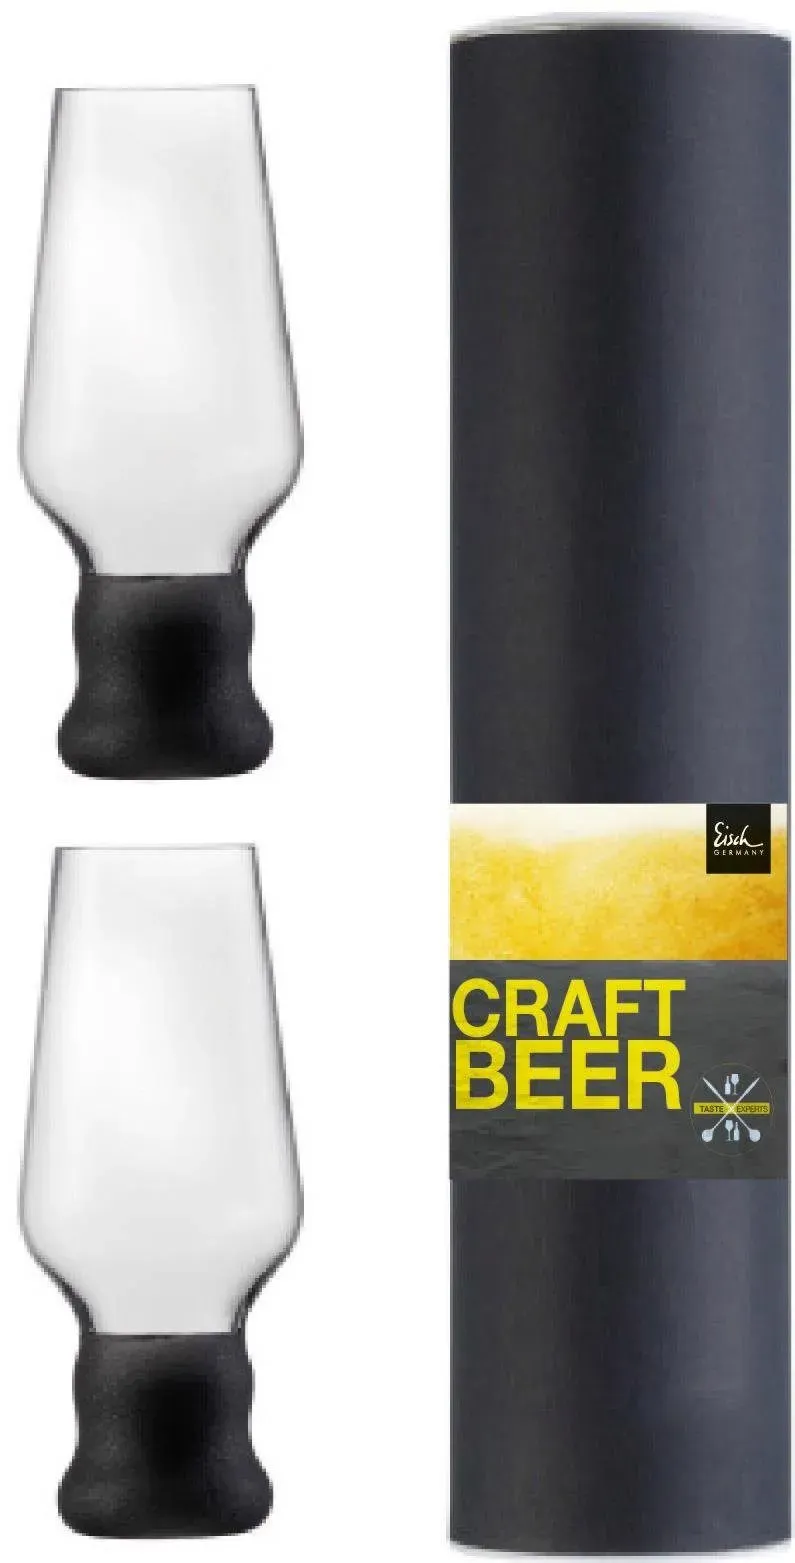 Bierglas EISCH "Craft Beer Becher" Trinkgefäße Gr. 18 cm, 450 ml, 2 tlg., schwarz Biergläser Bierkrüge bleifrei, 450 ml, 2-teilig